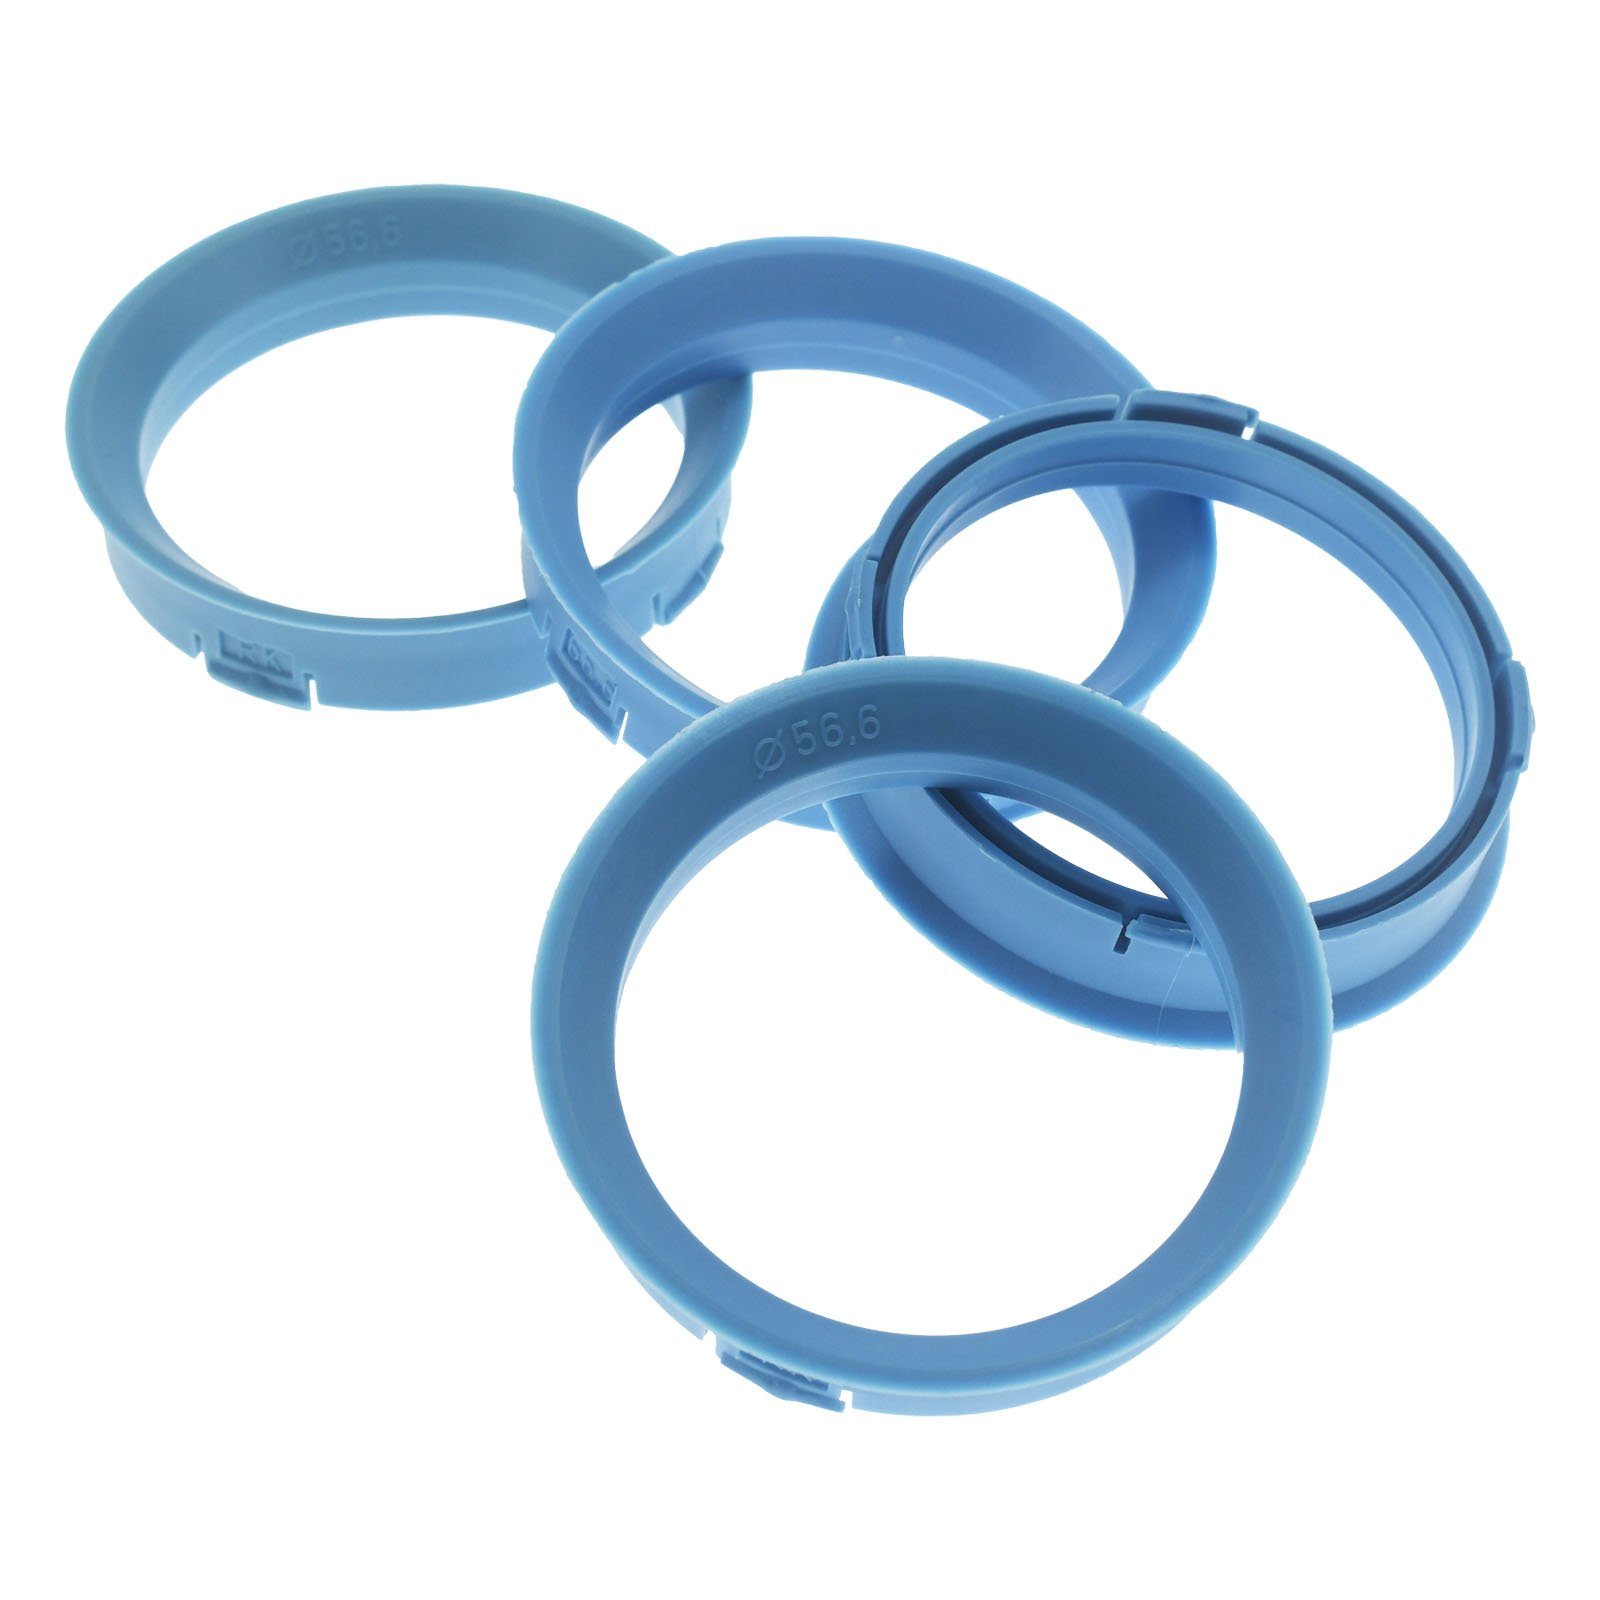 RKC Reifenstift 4x Zentrierringe Hellblau Felgen Ringe Made in Germany, Maße: 66,6 x 56,6 mm